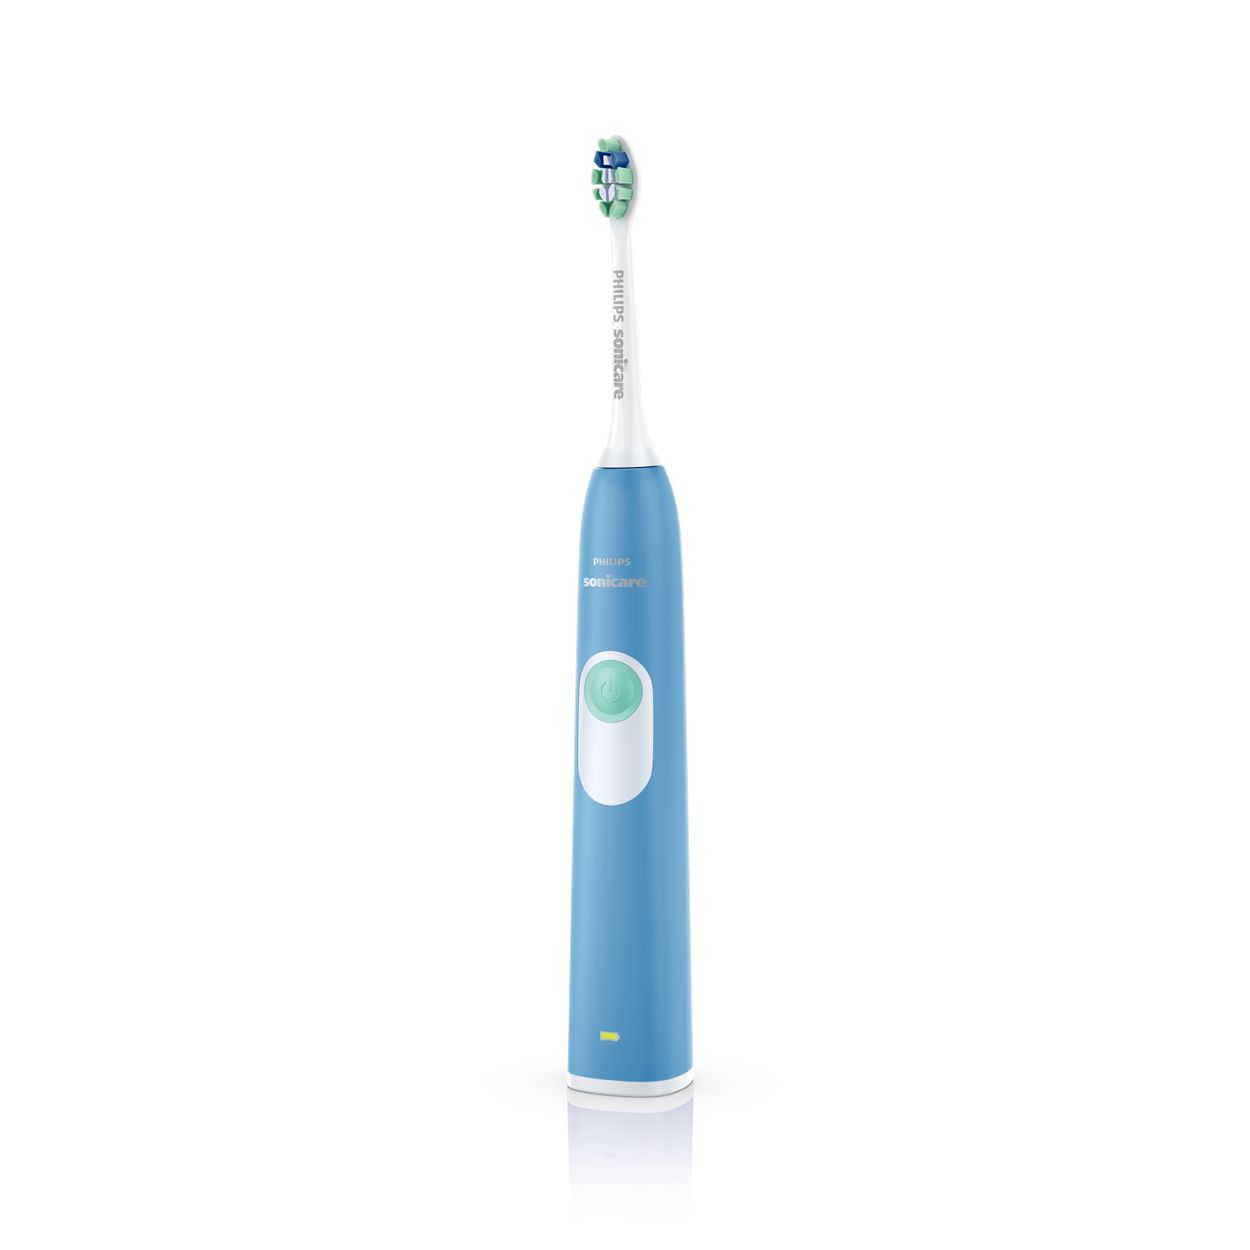 Echter Haan Verstoring 2 Series plaque control Sonic electric toothbrush HX6211/46 | Sonicare